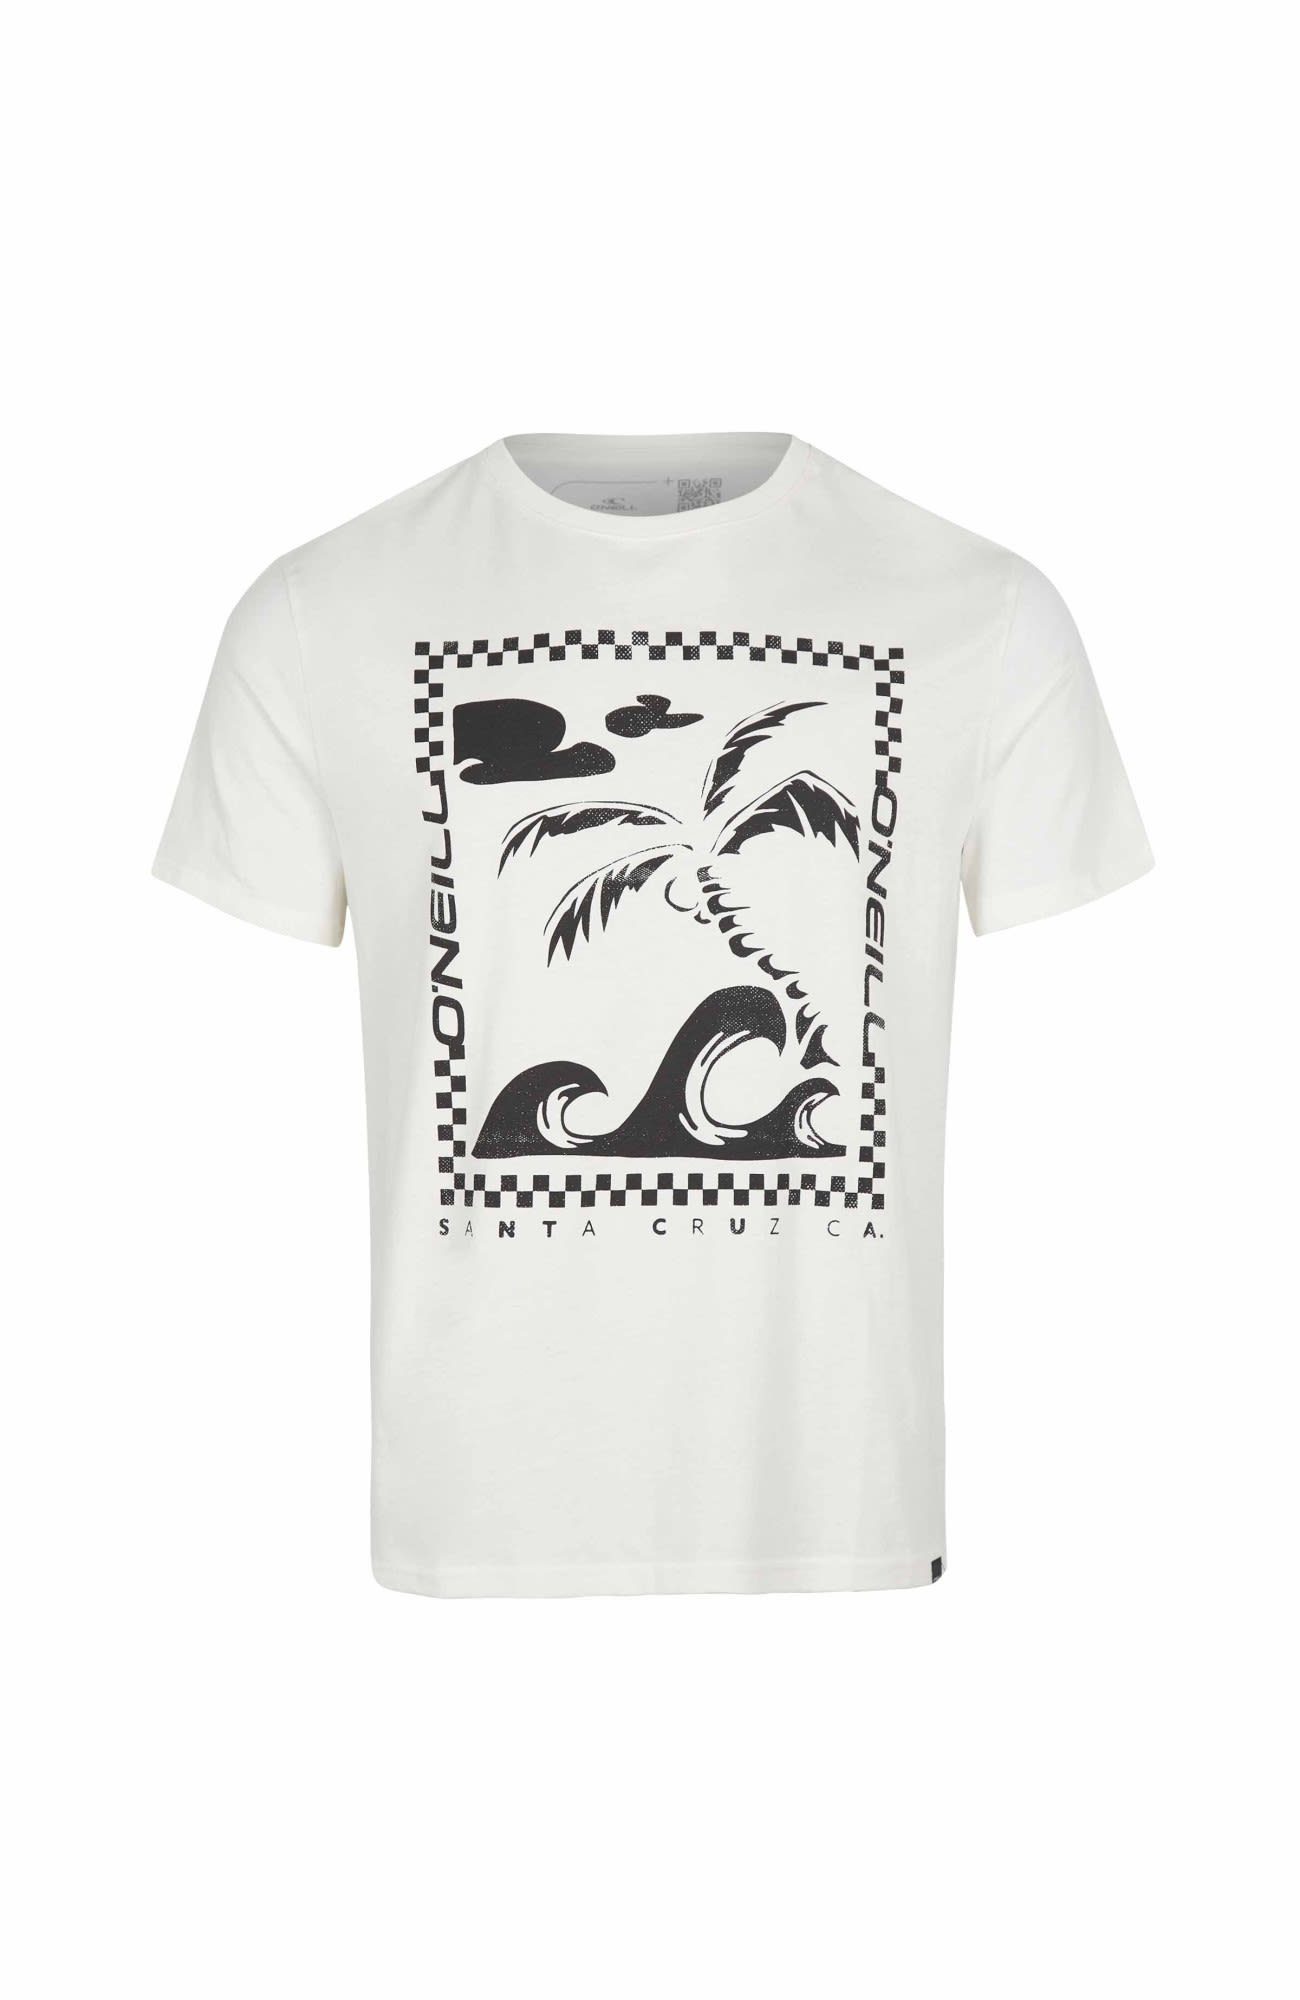 Snow T-shirt White O'Neill Herren Oneill Fin T-Shirt M Kurzarm-Shirt